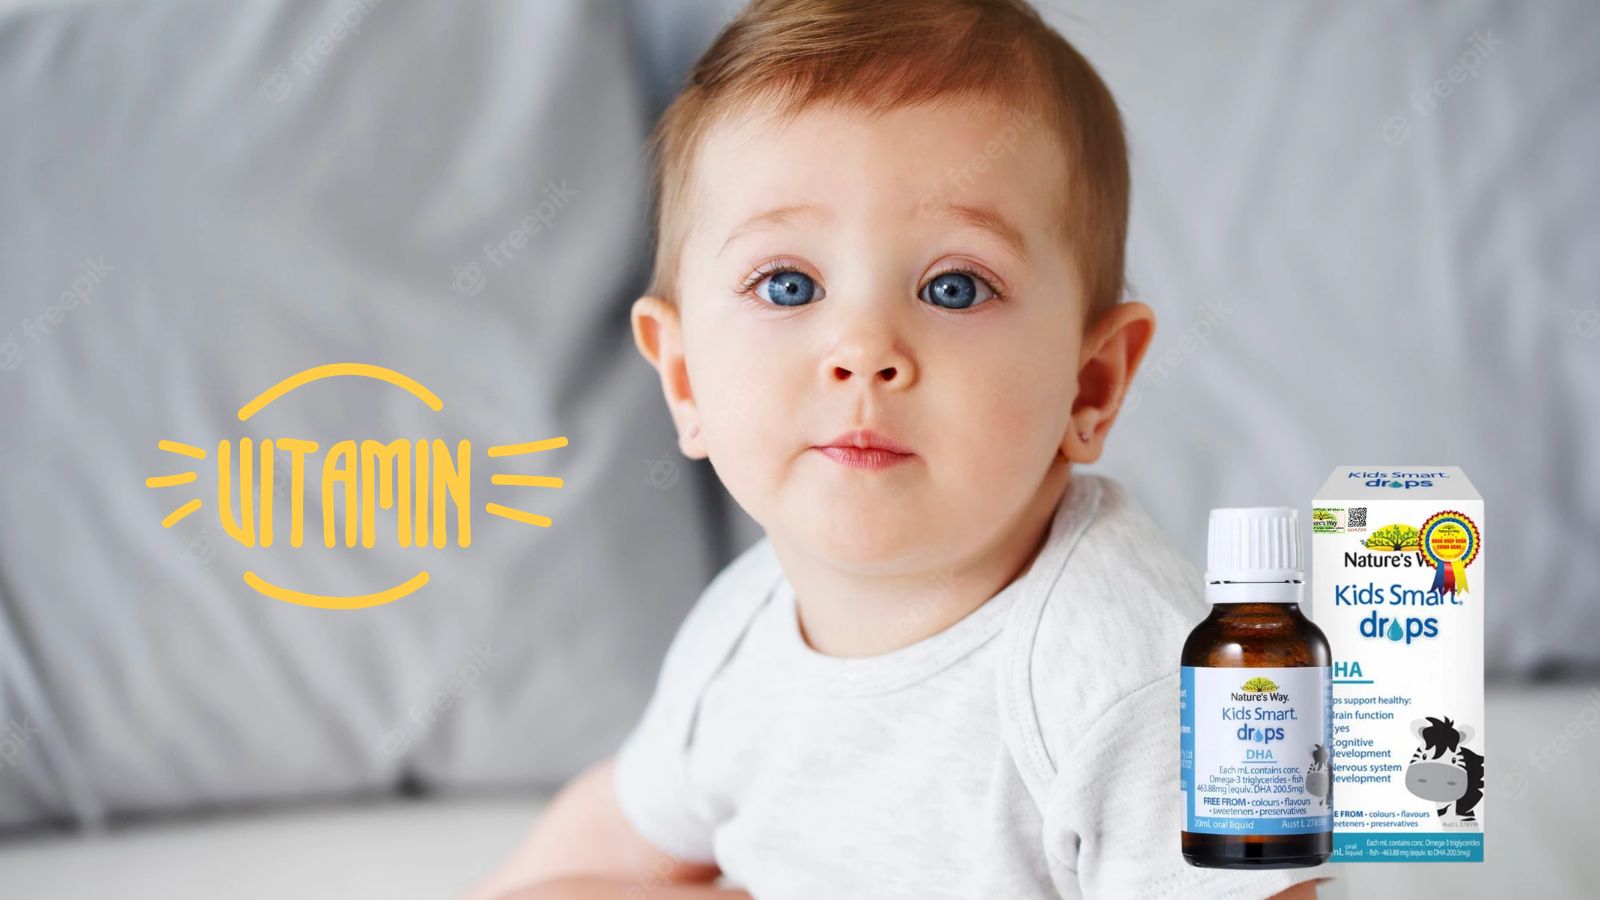  Siro Nature's Way Kids Smart Drops DHA bổ sung vitamin và khoáng chất cho bé. 